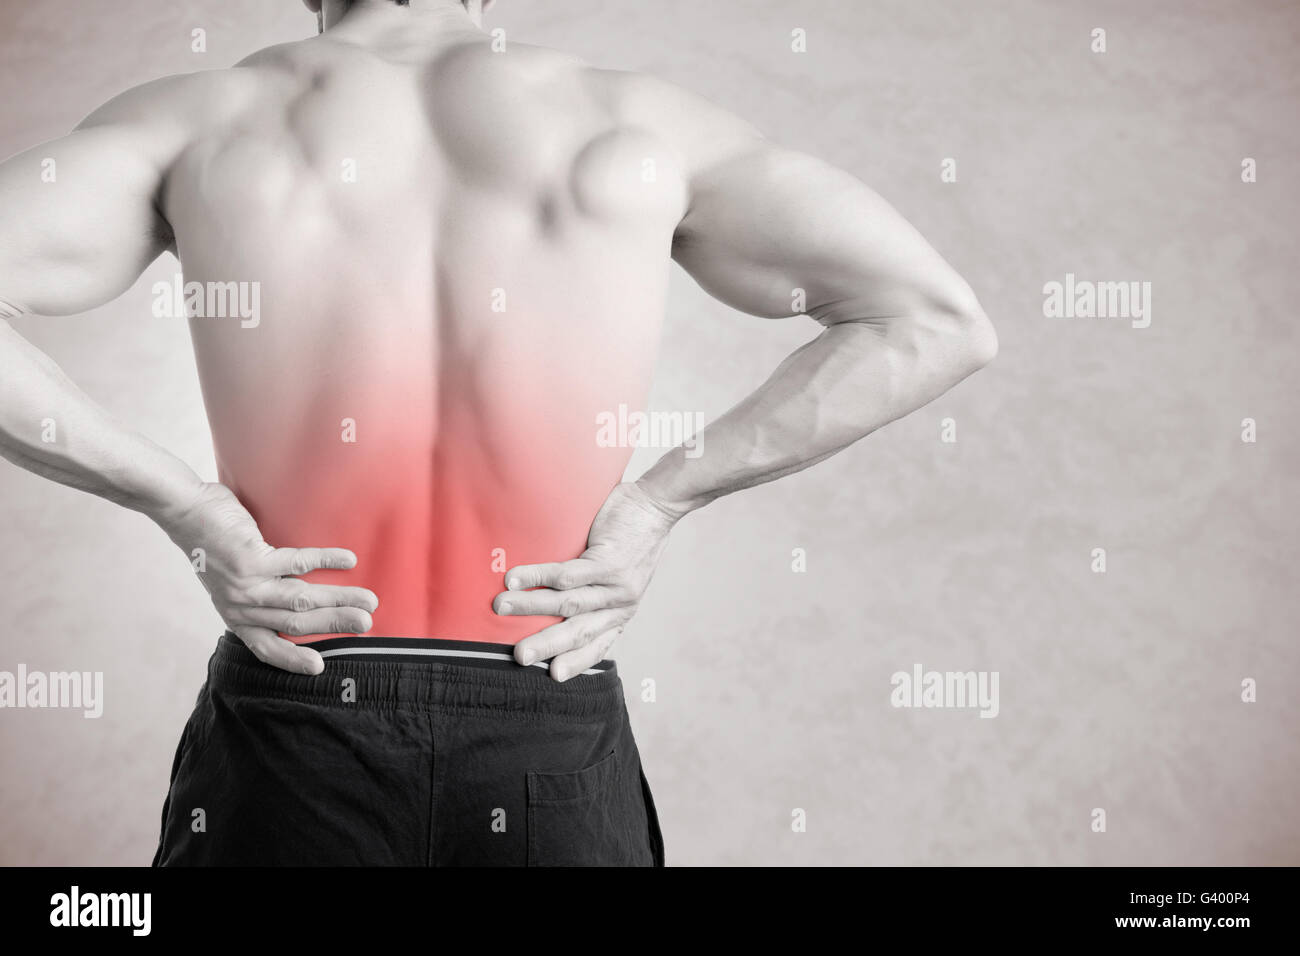 Sportler mit Schmerzen im unteren Rücken, isoliert in grau. Roter Fleck um die schmerzende Stelle. Stockfoto